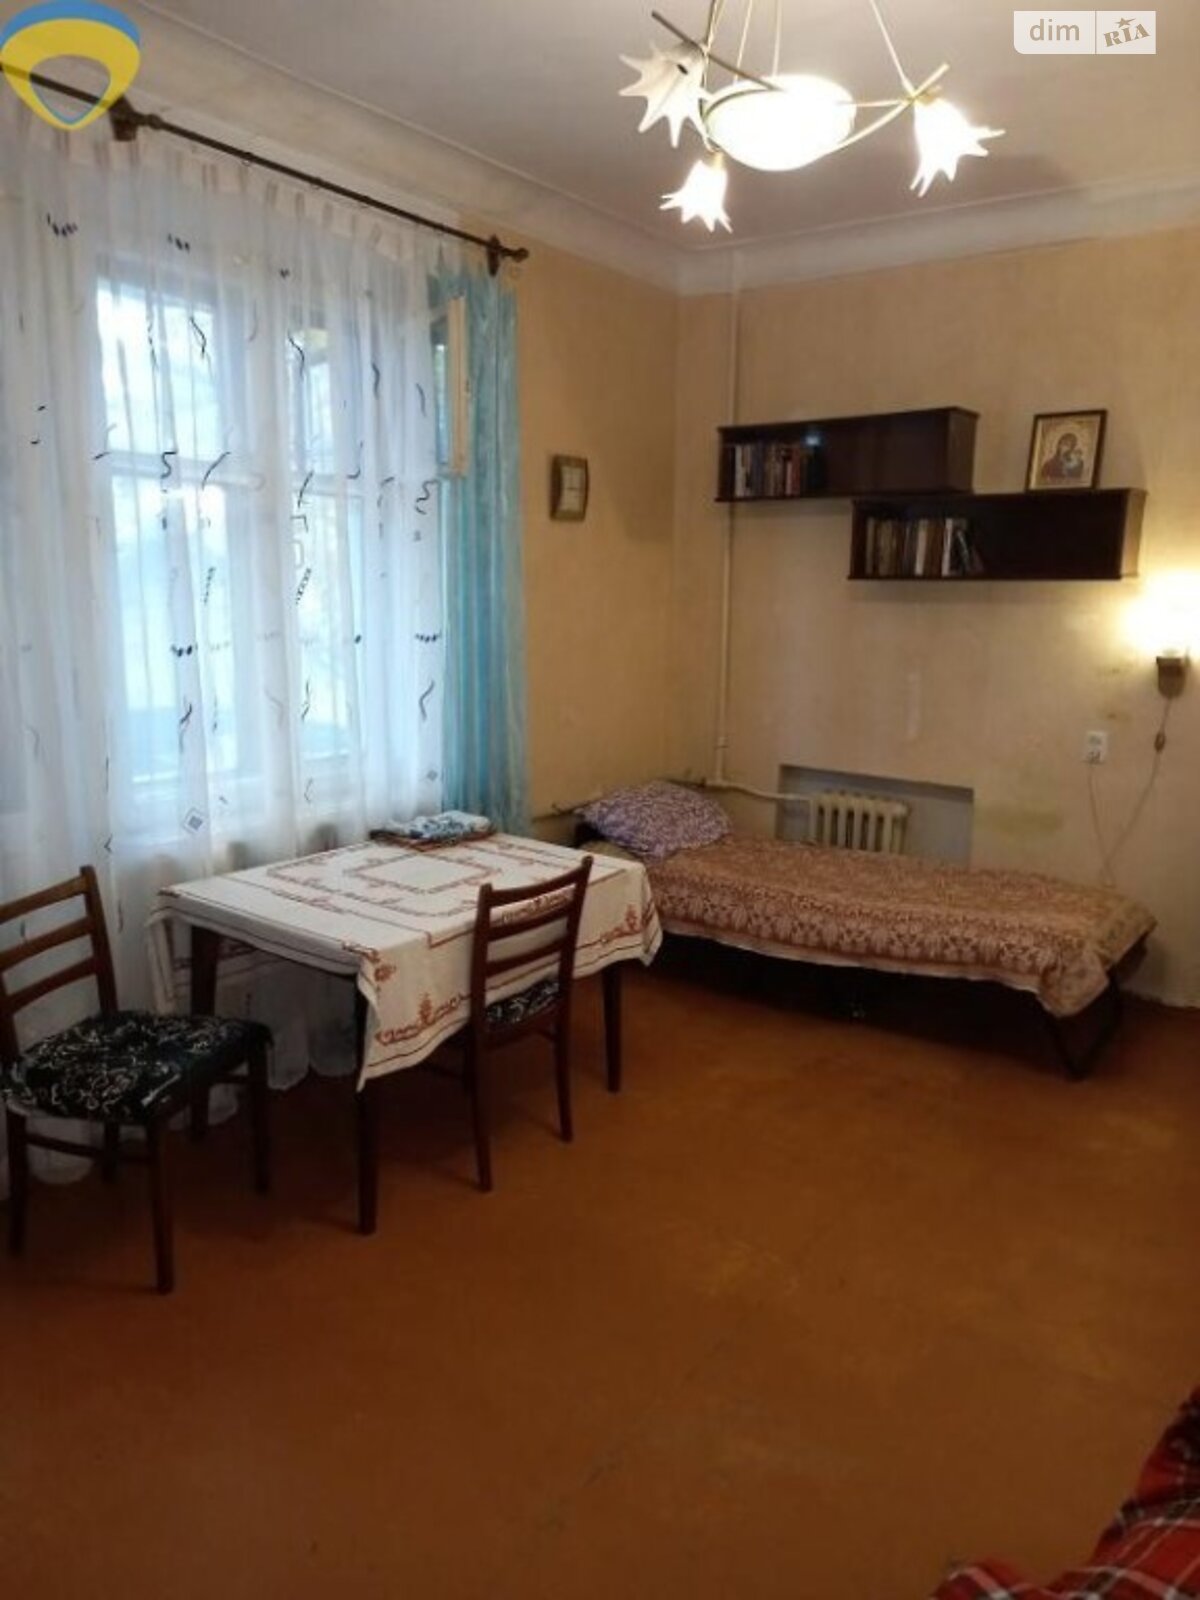 Кімната в Одесі на вул. Скворцова в районі Хаджибейський на продаж фото 1